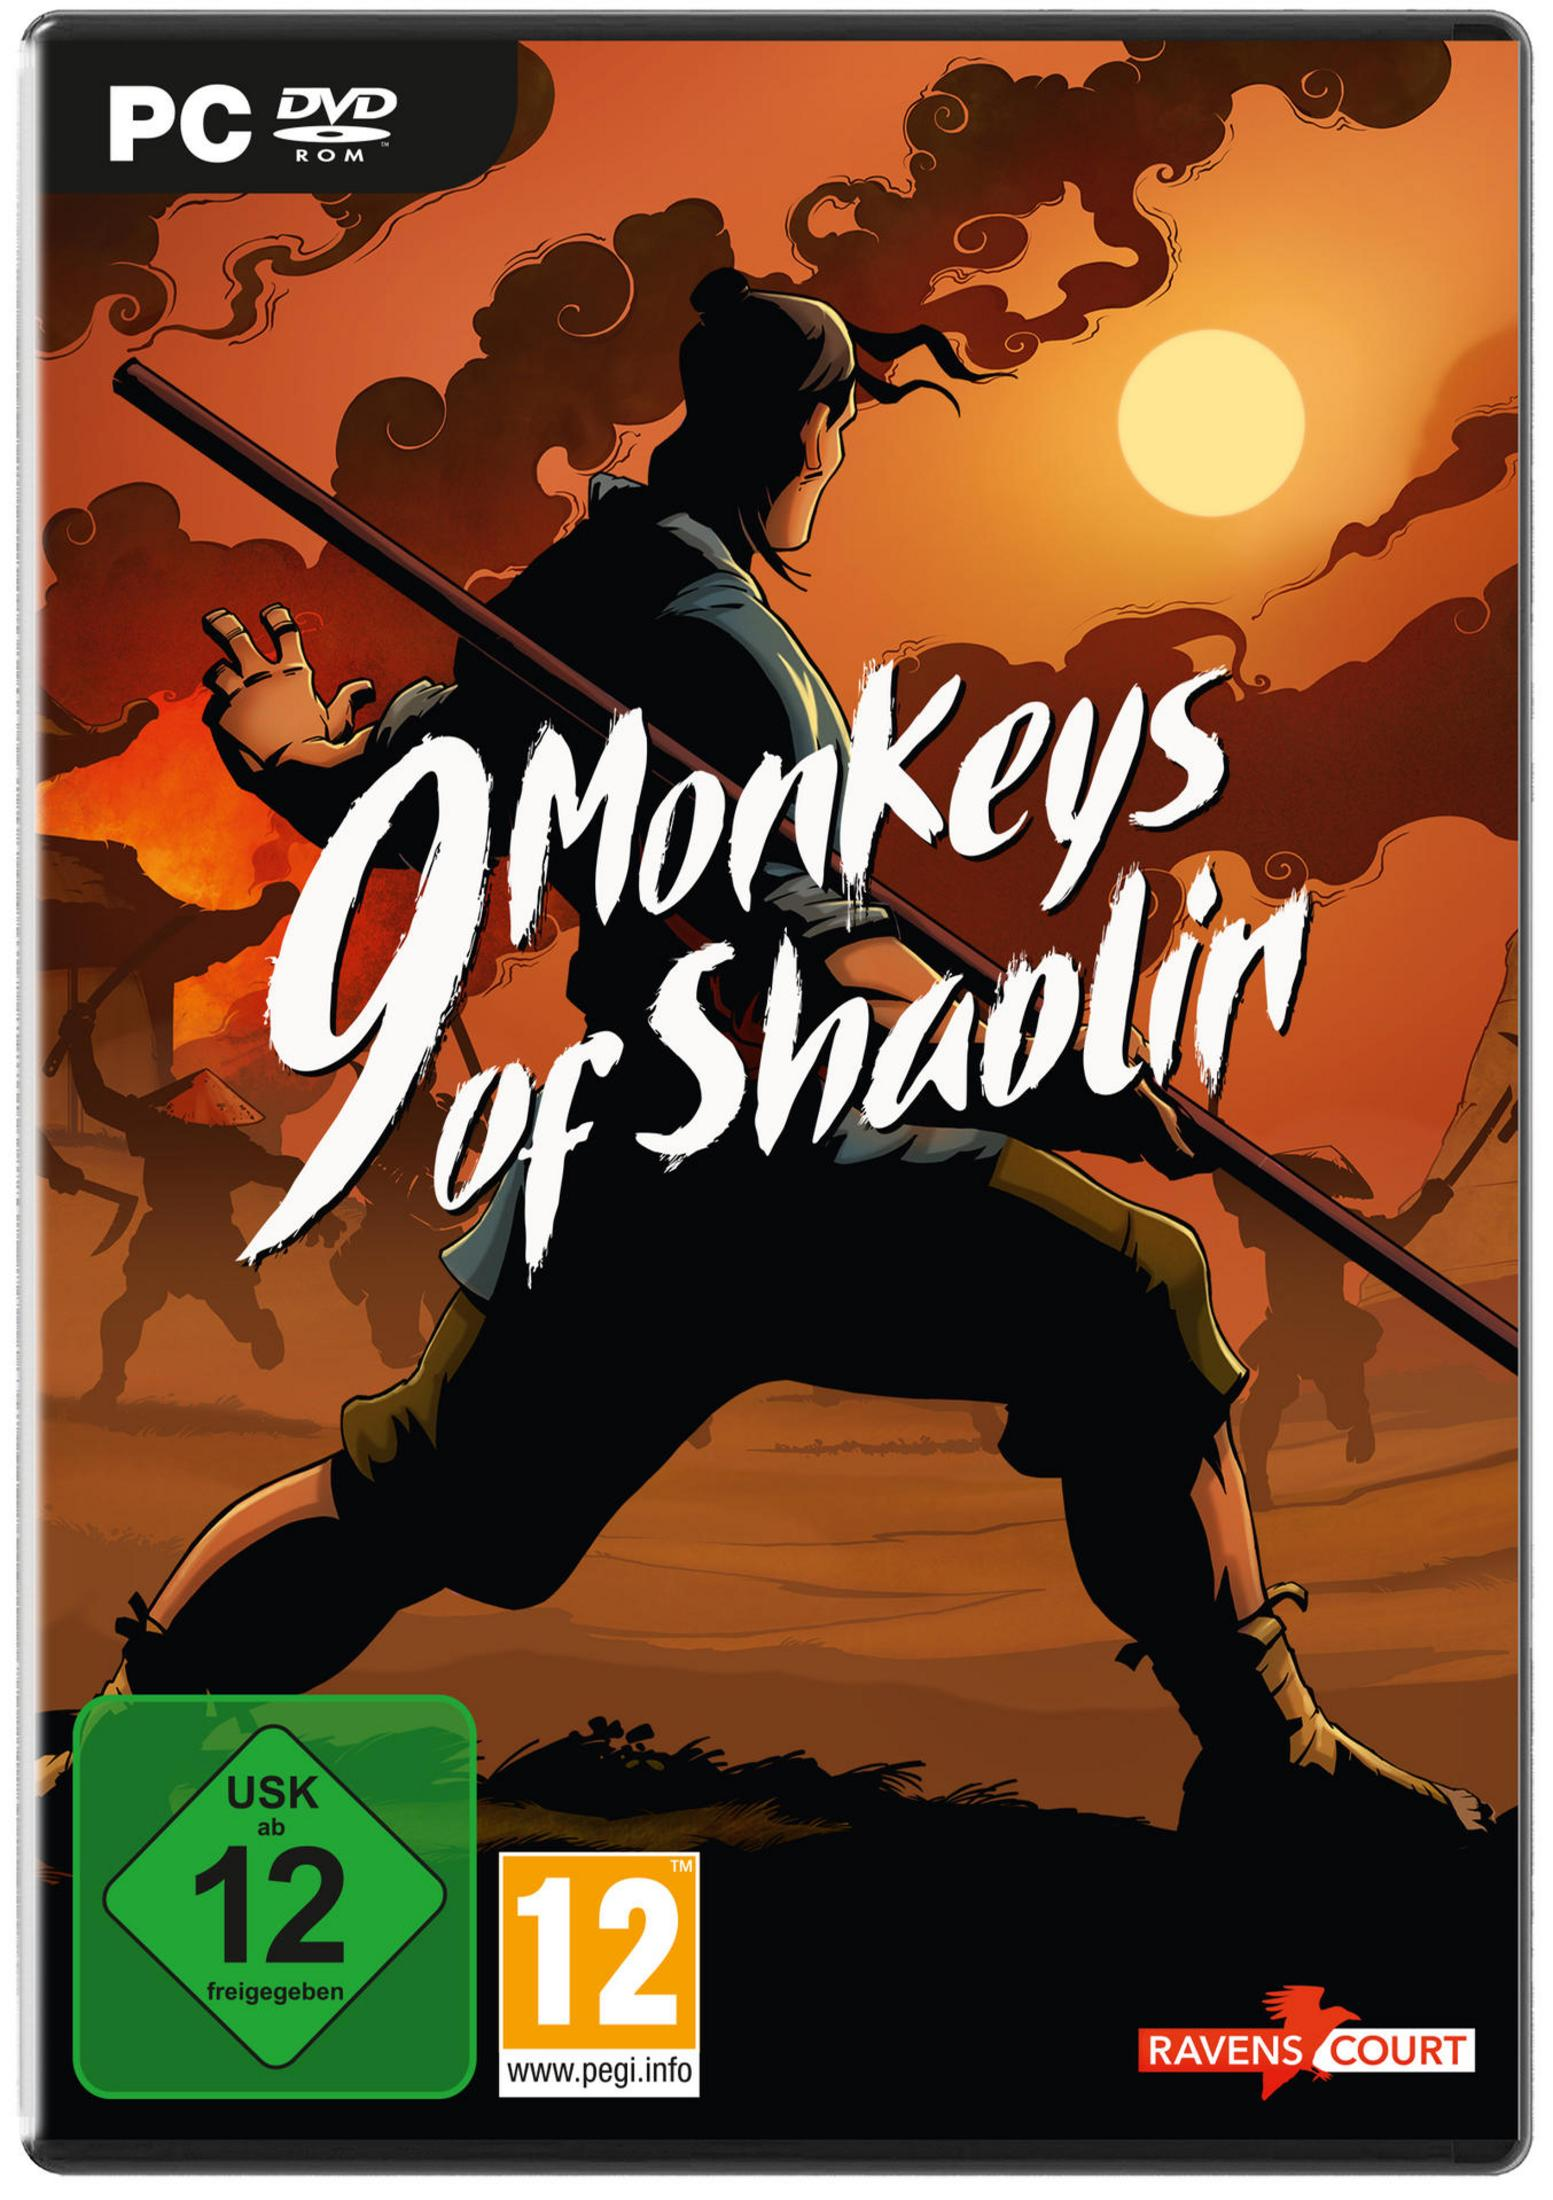 - 9 Monkeys of Shaolin [PC]